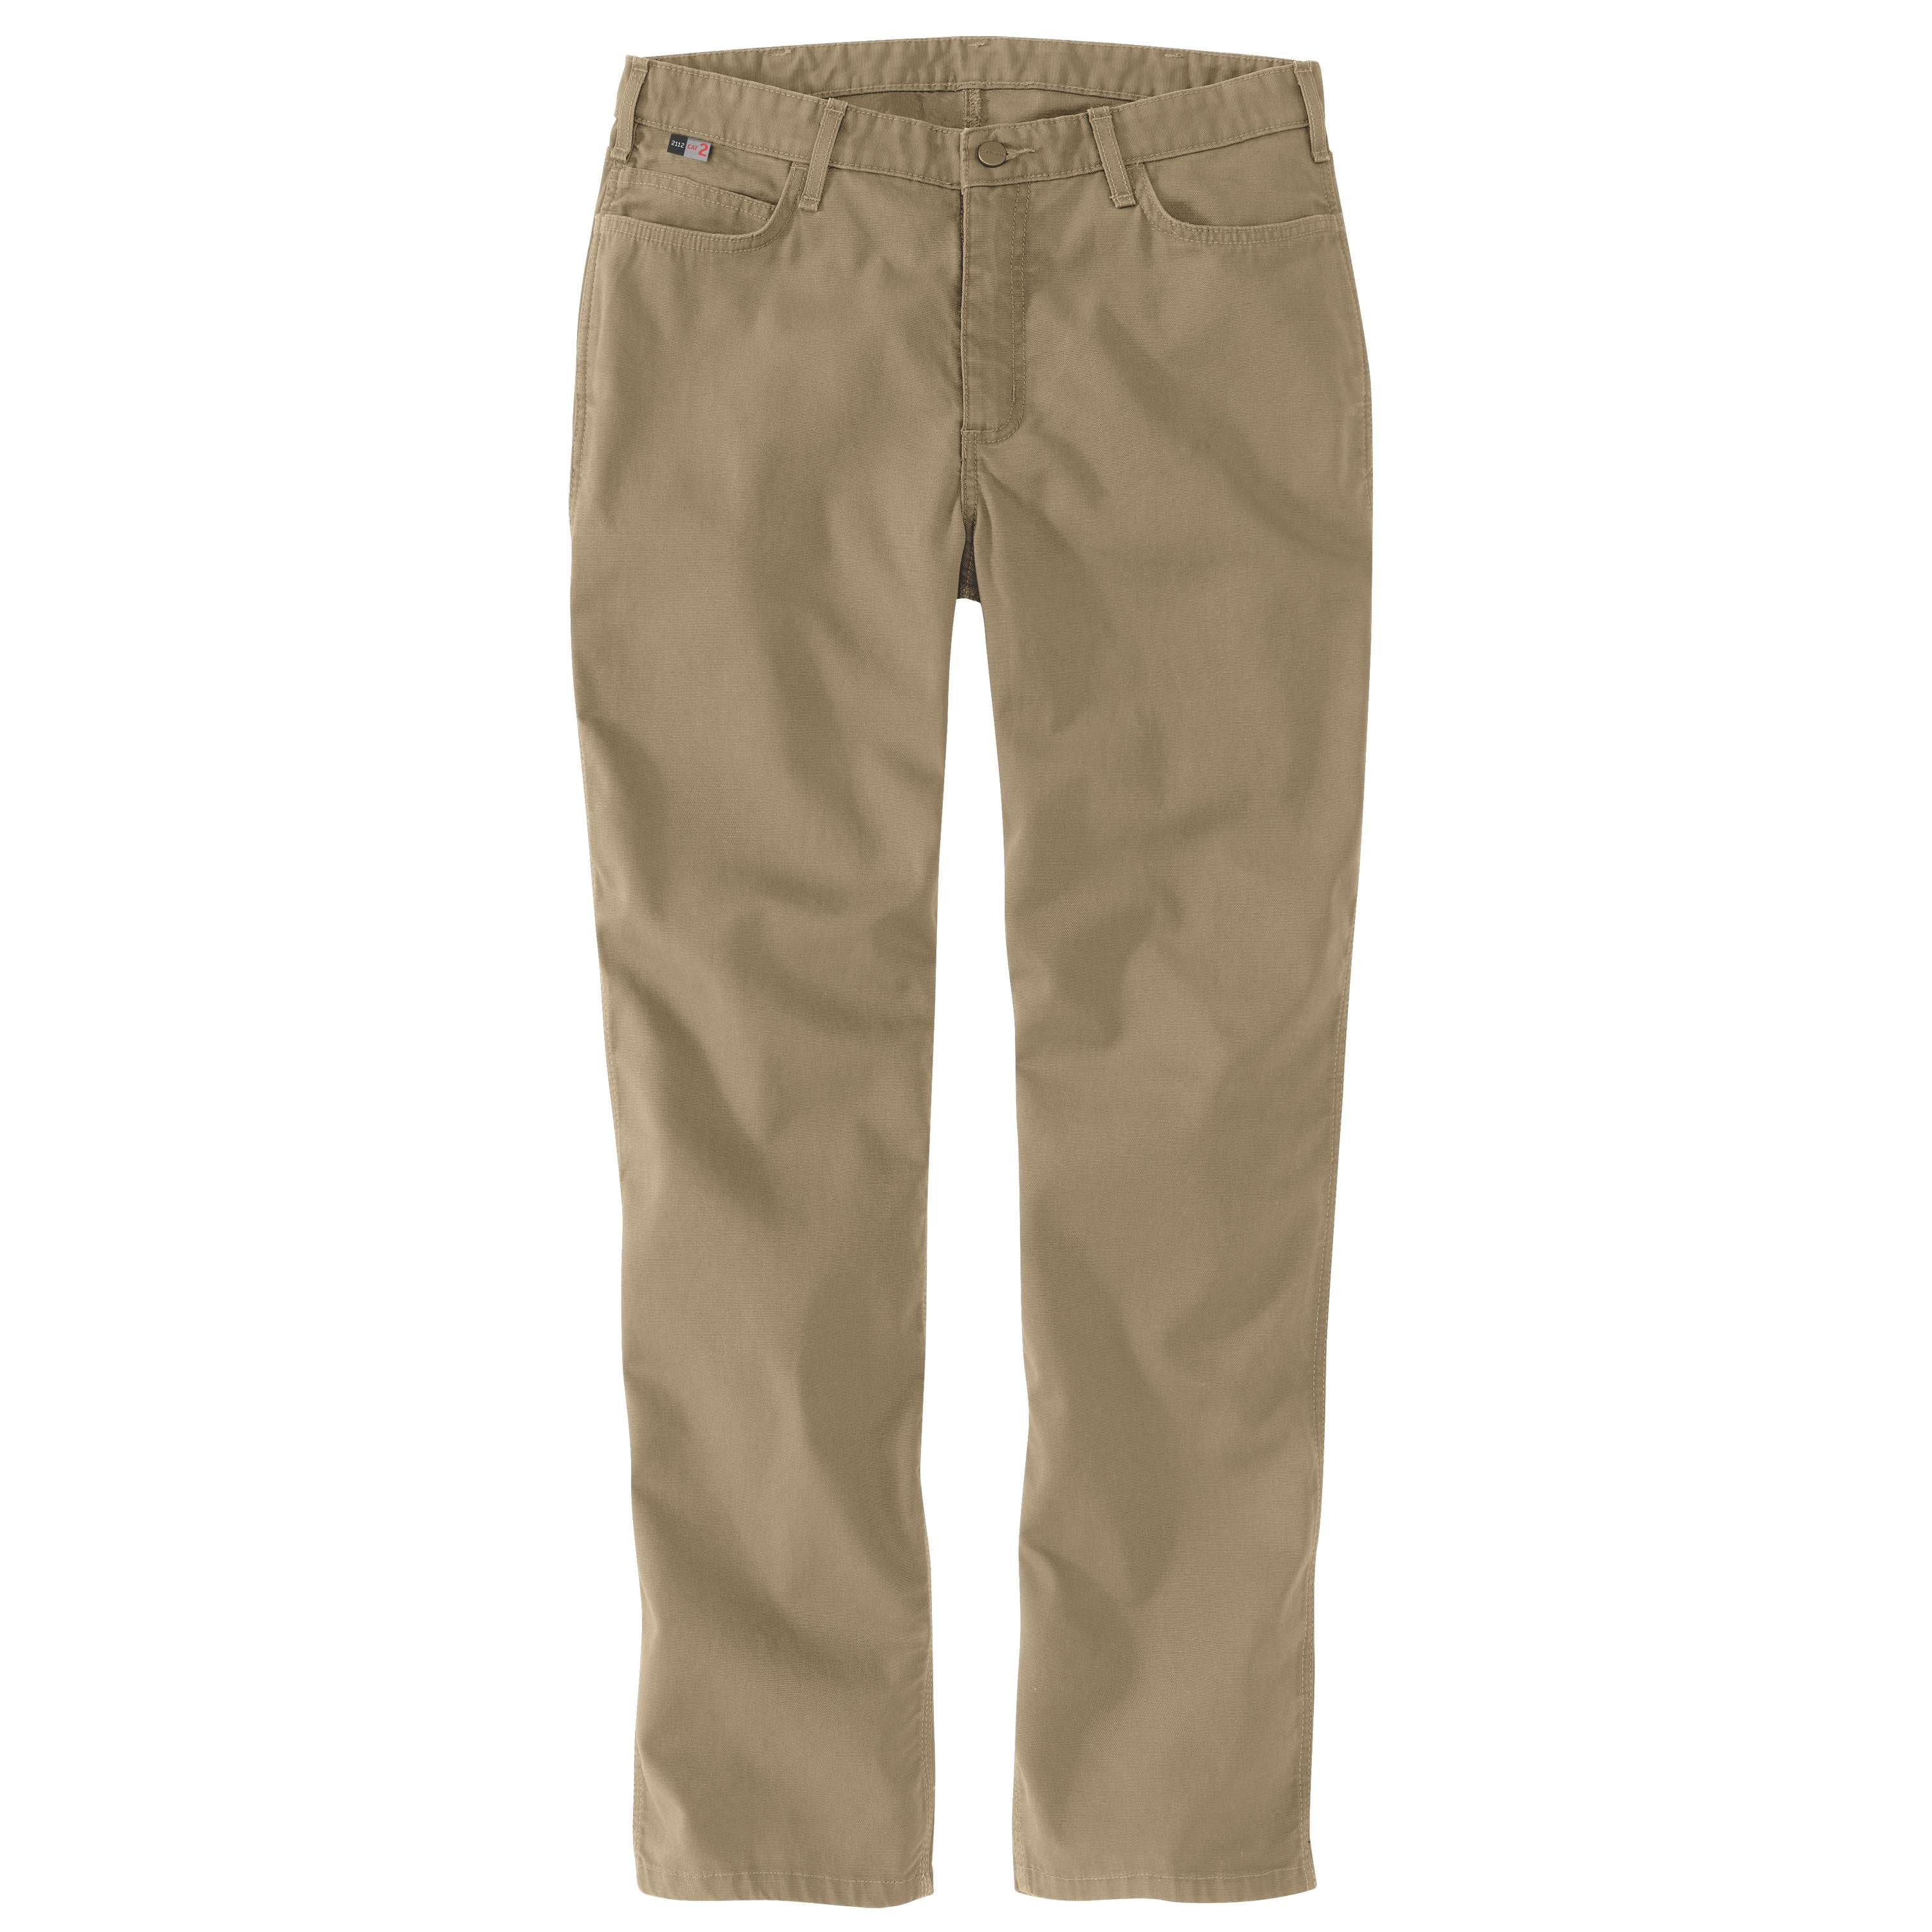 Men's FR Cargo Work Pants